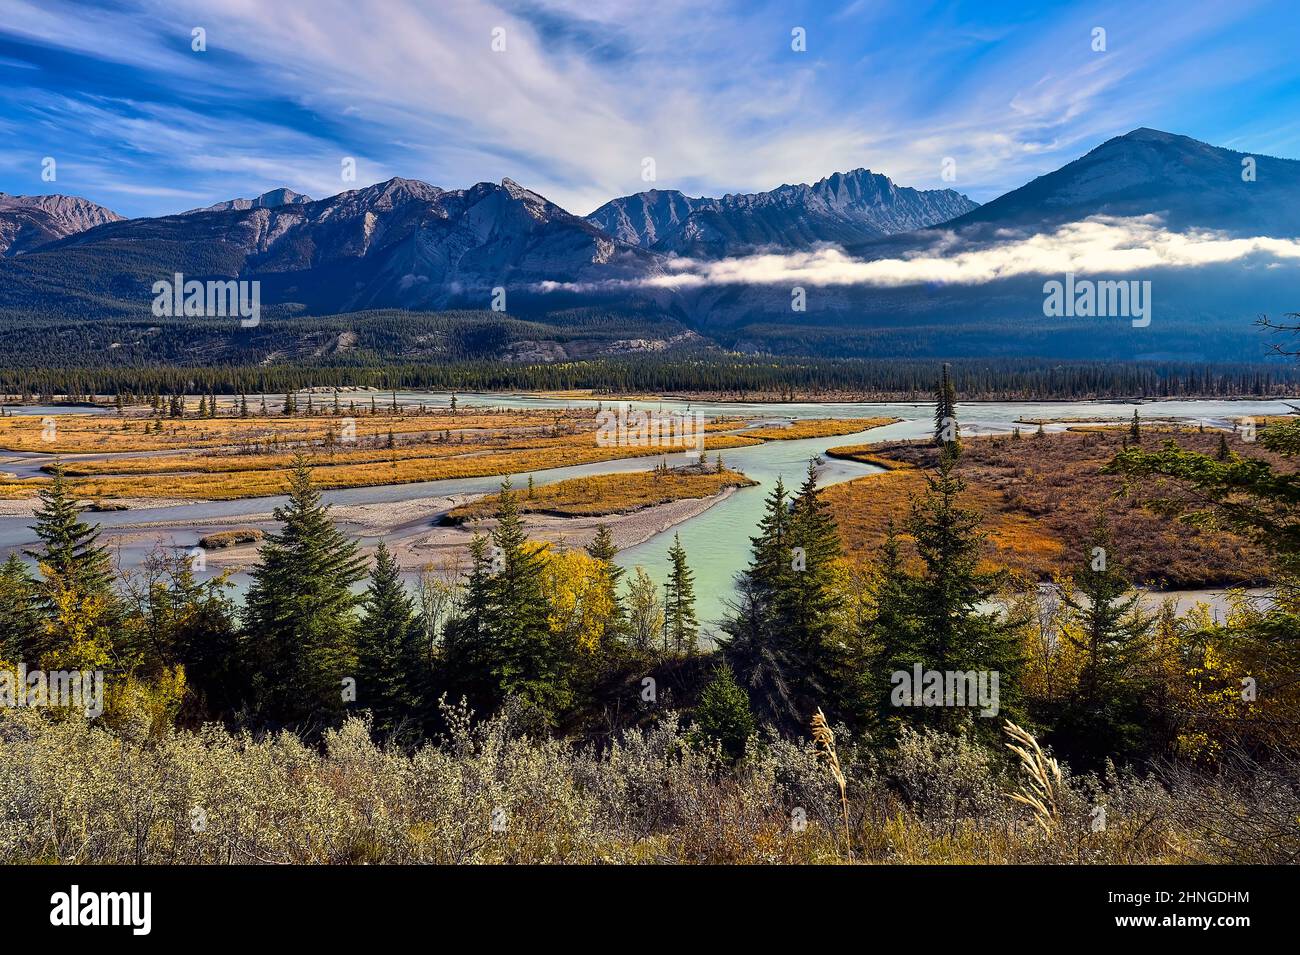 Una imagen de paisaje otoñal de las montañas rocosas y el río Athabasca con vegetación de color otoñal en el Parque Nacional Jasper en Alberta, Canadá Foto de stock